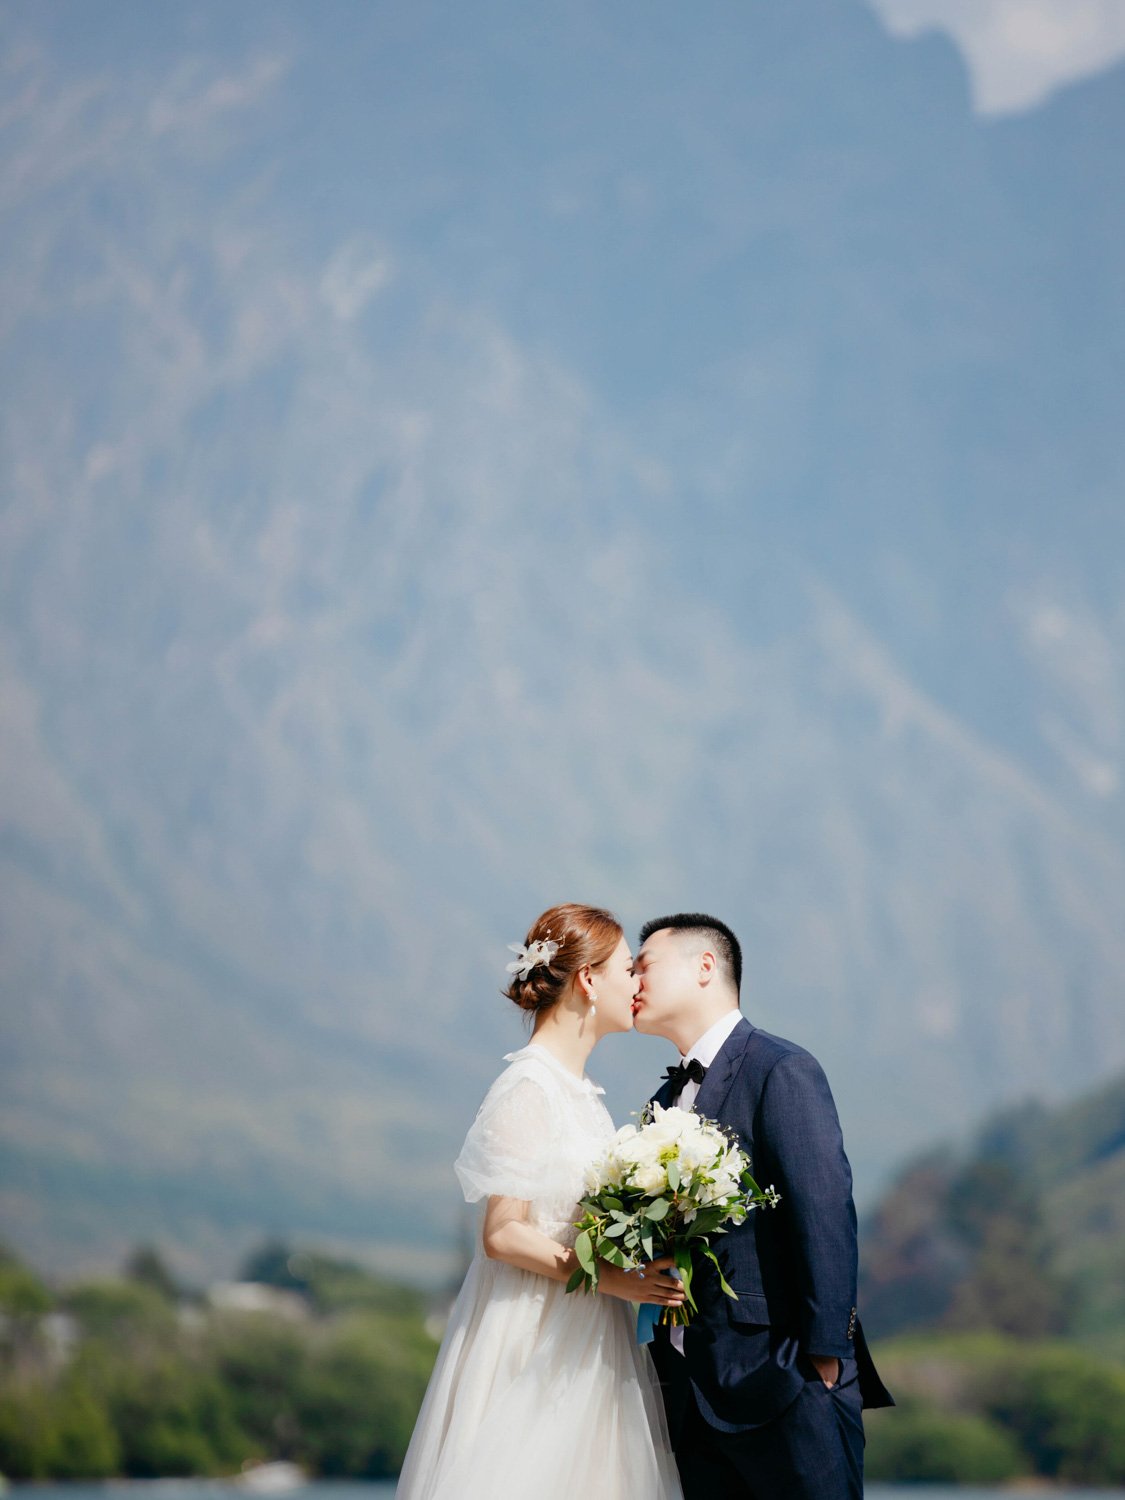 Queenstownn Canyons Lodge outdoor wedding elopement photographer Panda Bay Films-19.jpg